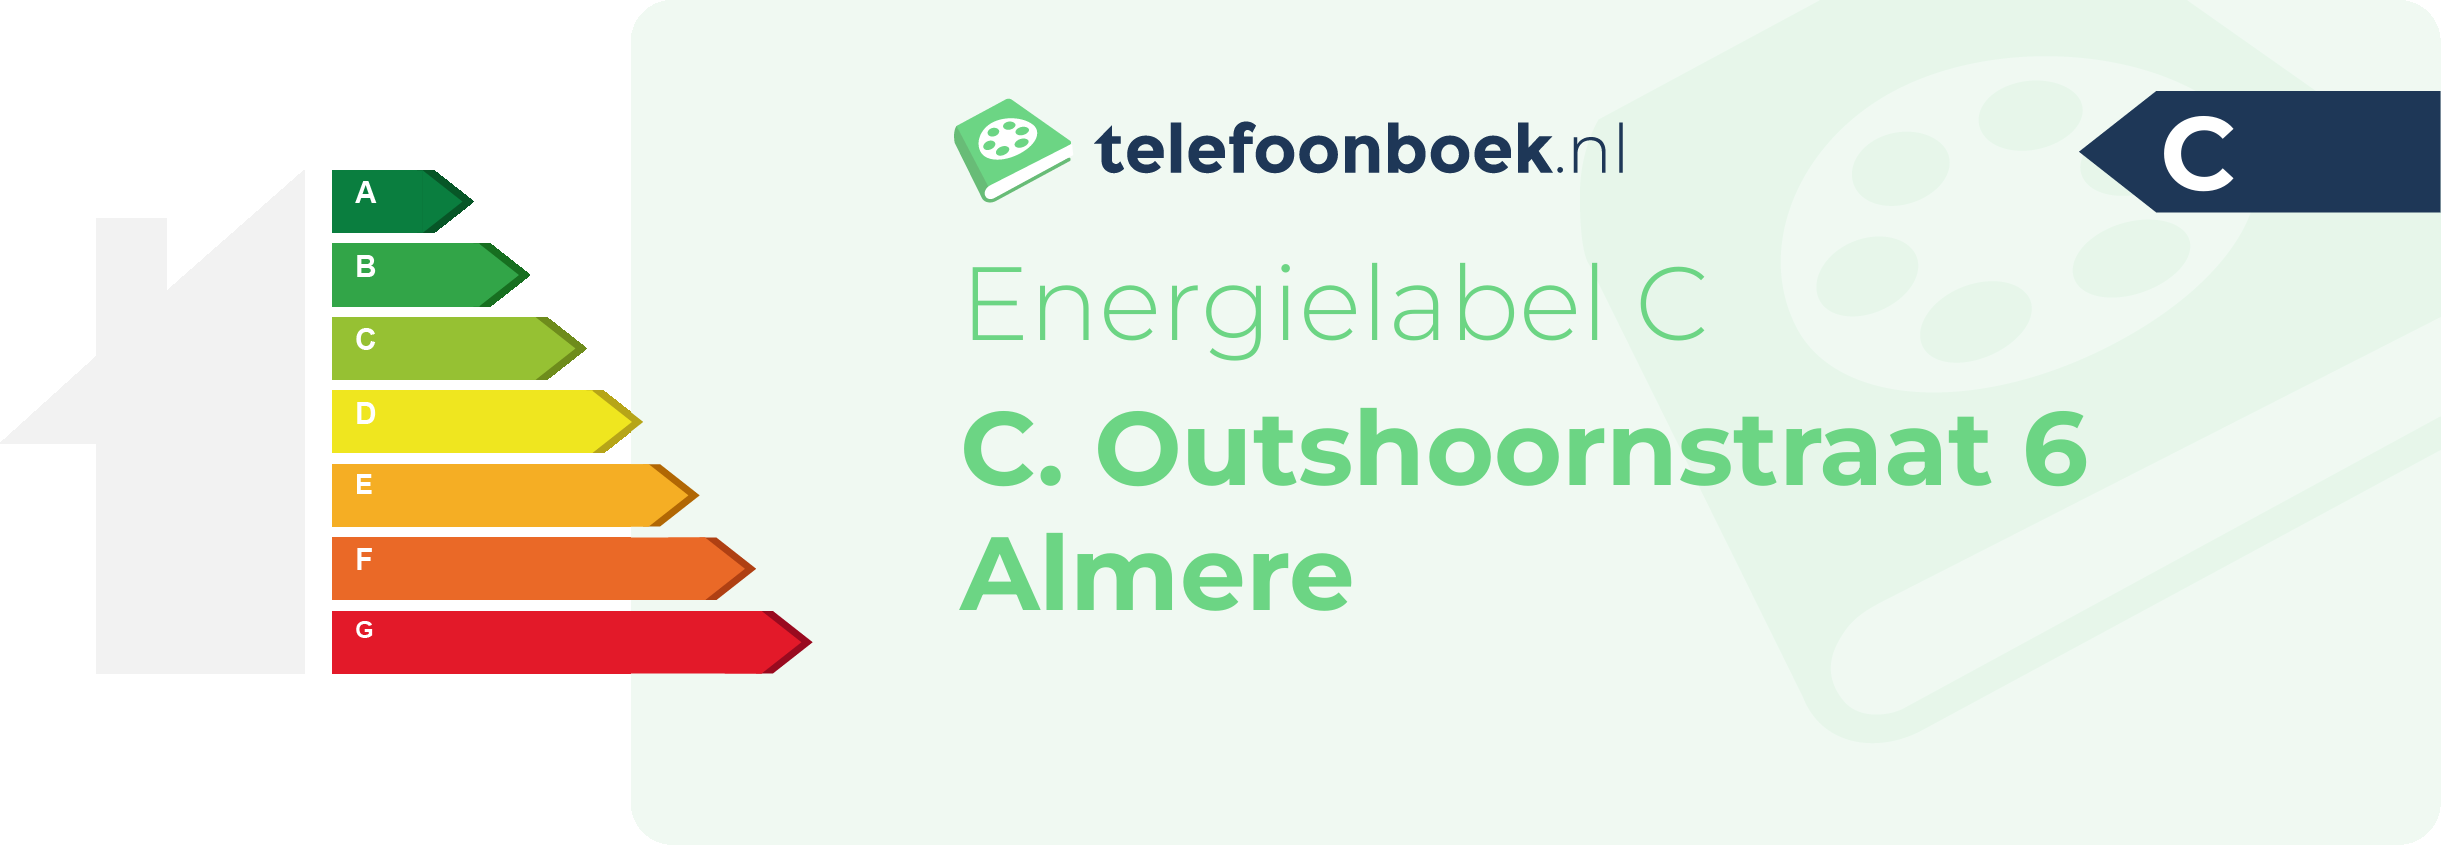 Energielabel C. Outshoornstraat 6 Almere